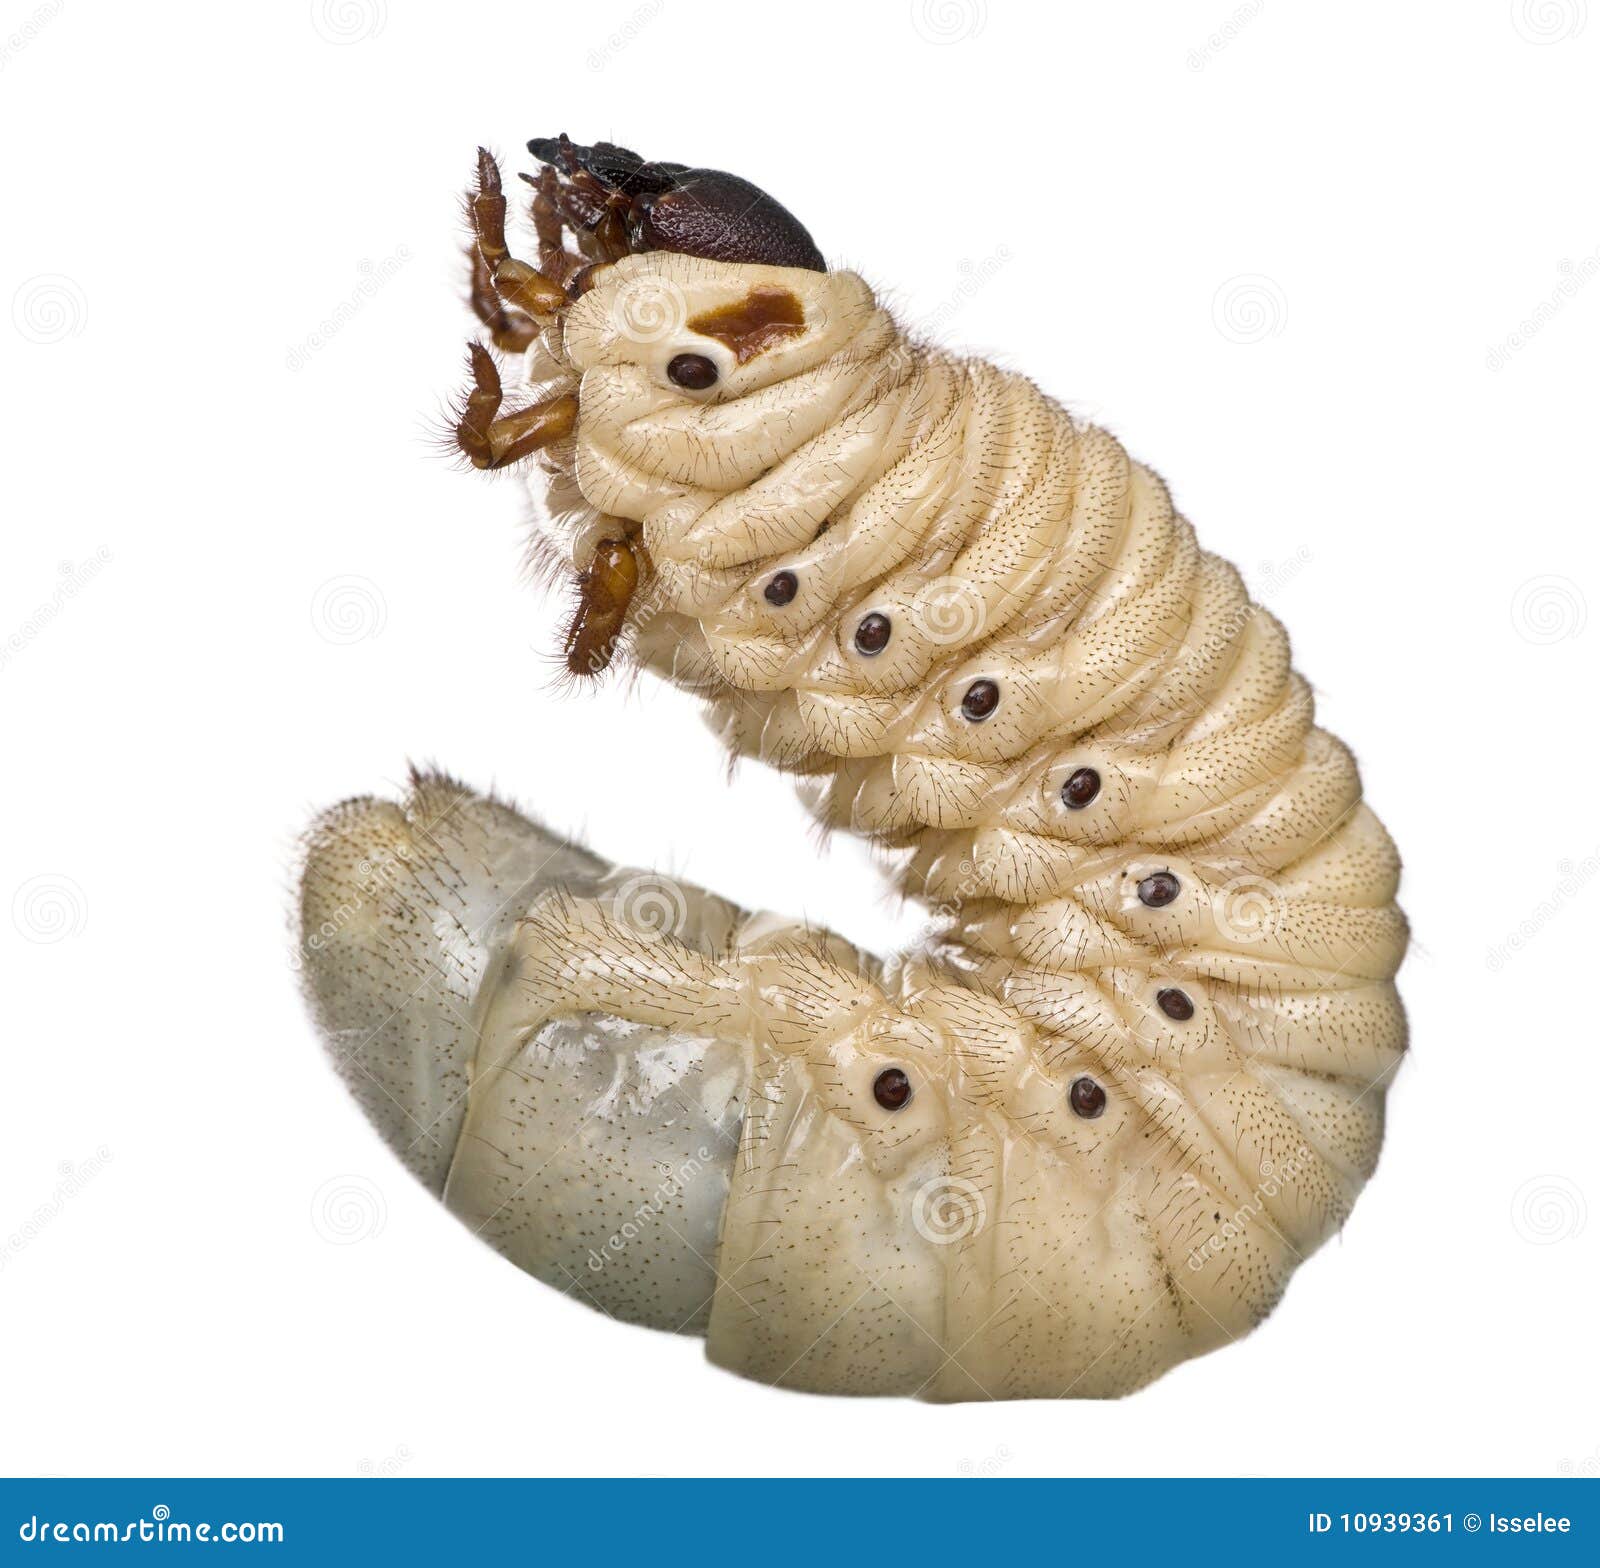 larva of a hercules beetle, dynastes hercules